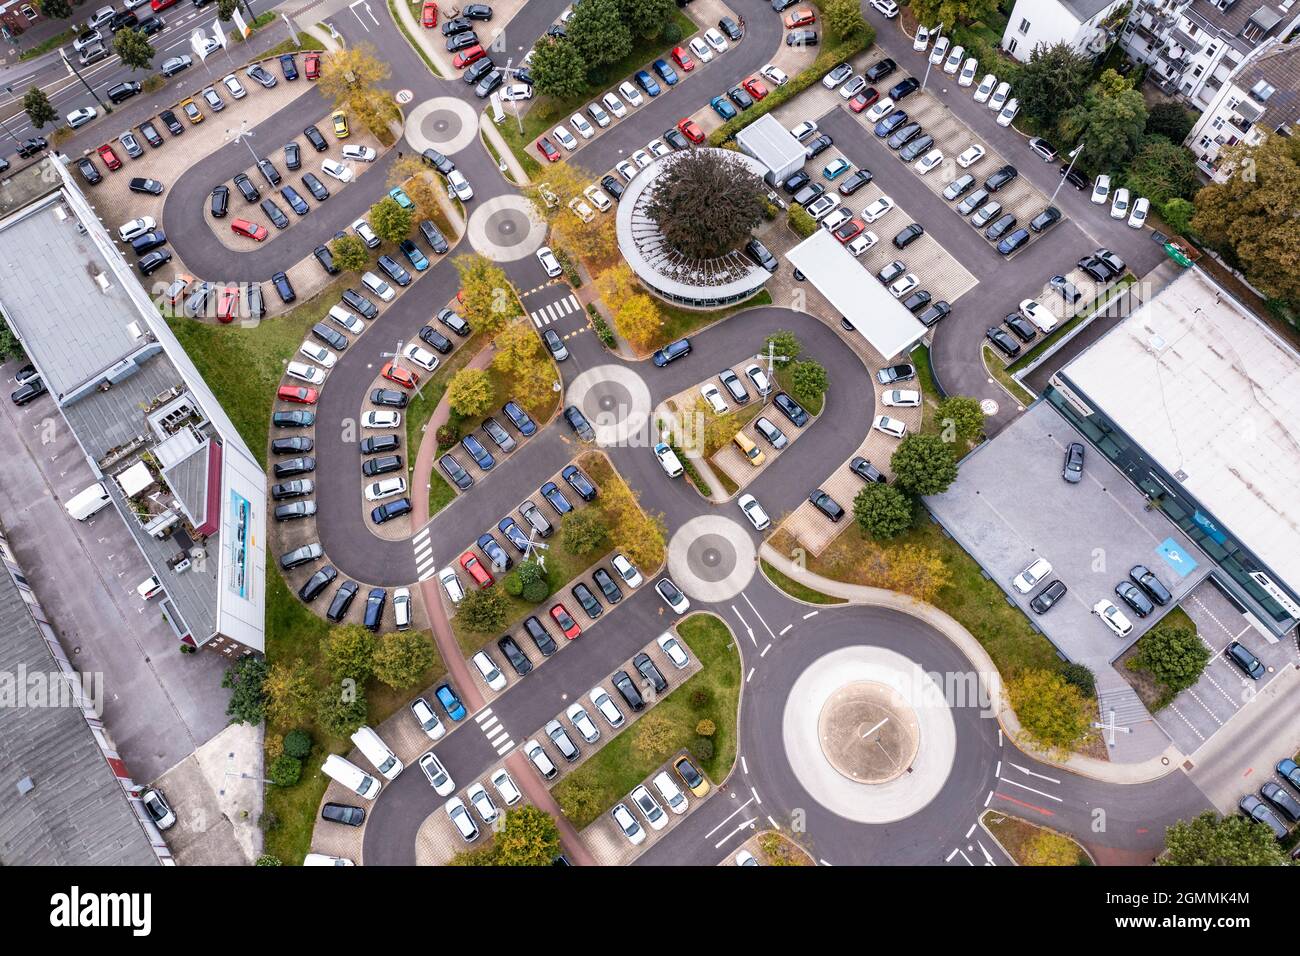 5 Kreisverkehre beim VW Autohaus an der Automeile am Höherweg à Düsseldorf. AUS der Luft gesehen ein kleines Kunstwerk mit den geparkten Autos. Banque D'Images